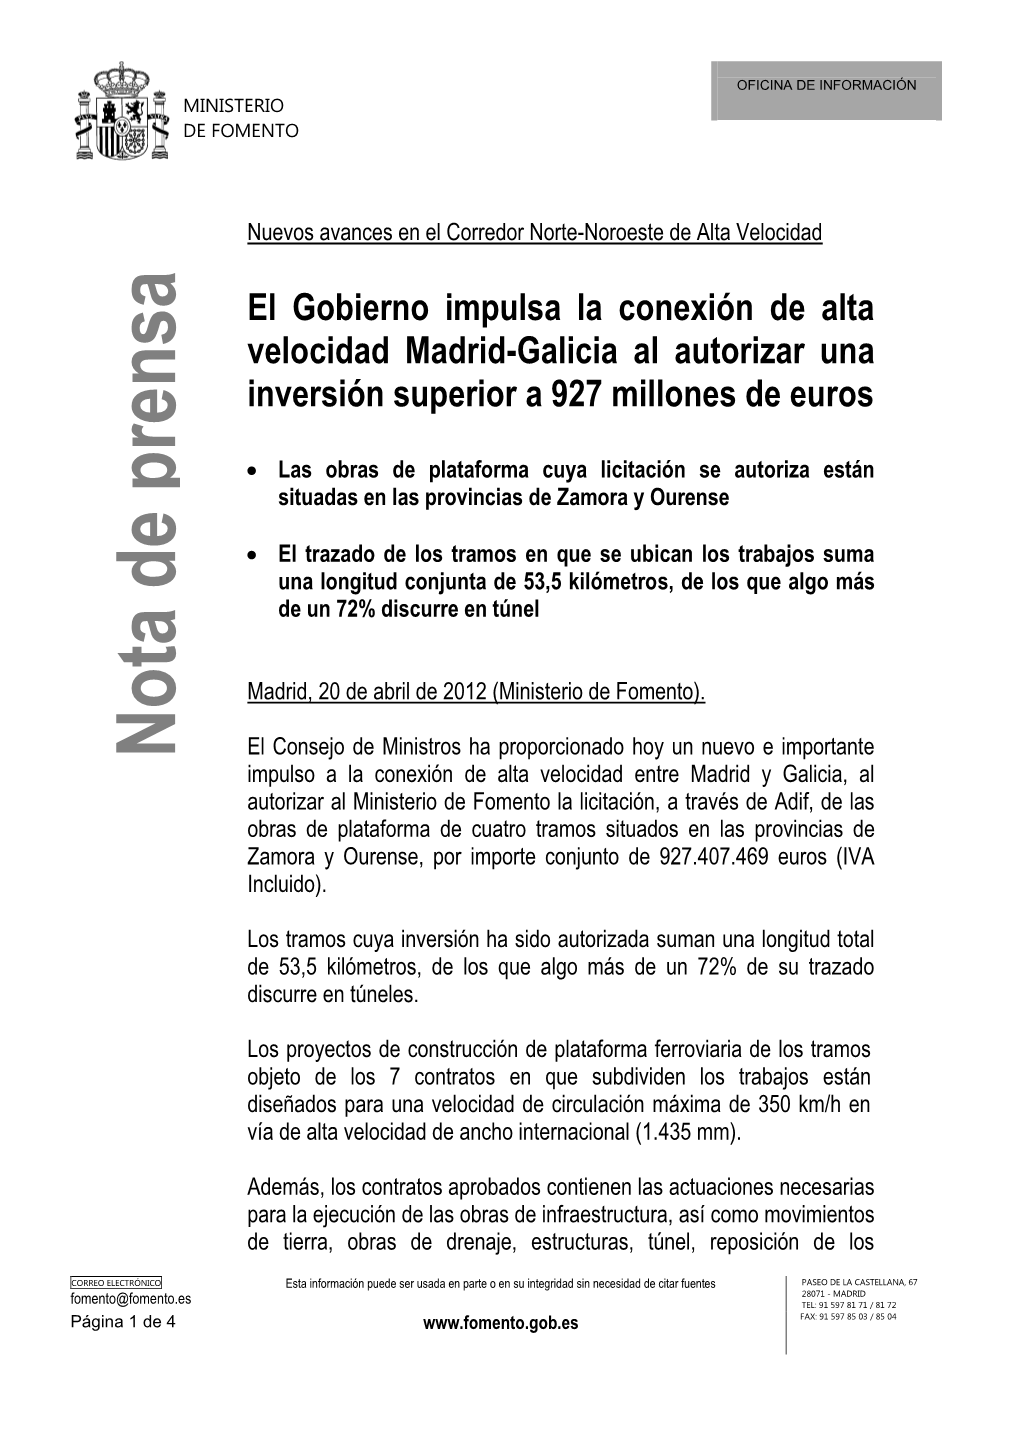 El Gobierno Impulsa La Conexión De Alta Velocidad Madrid-Galicia Al Autorizar Una Inversión Superior a 927 Millones De Euros